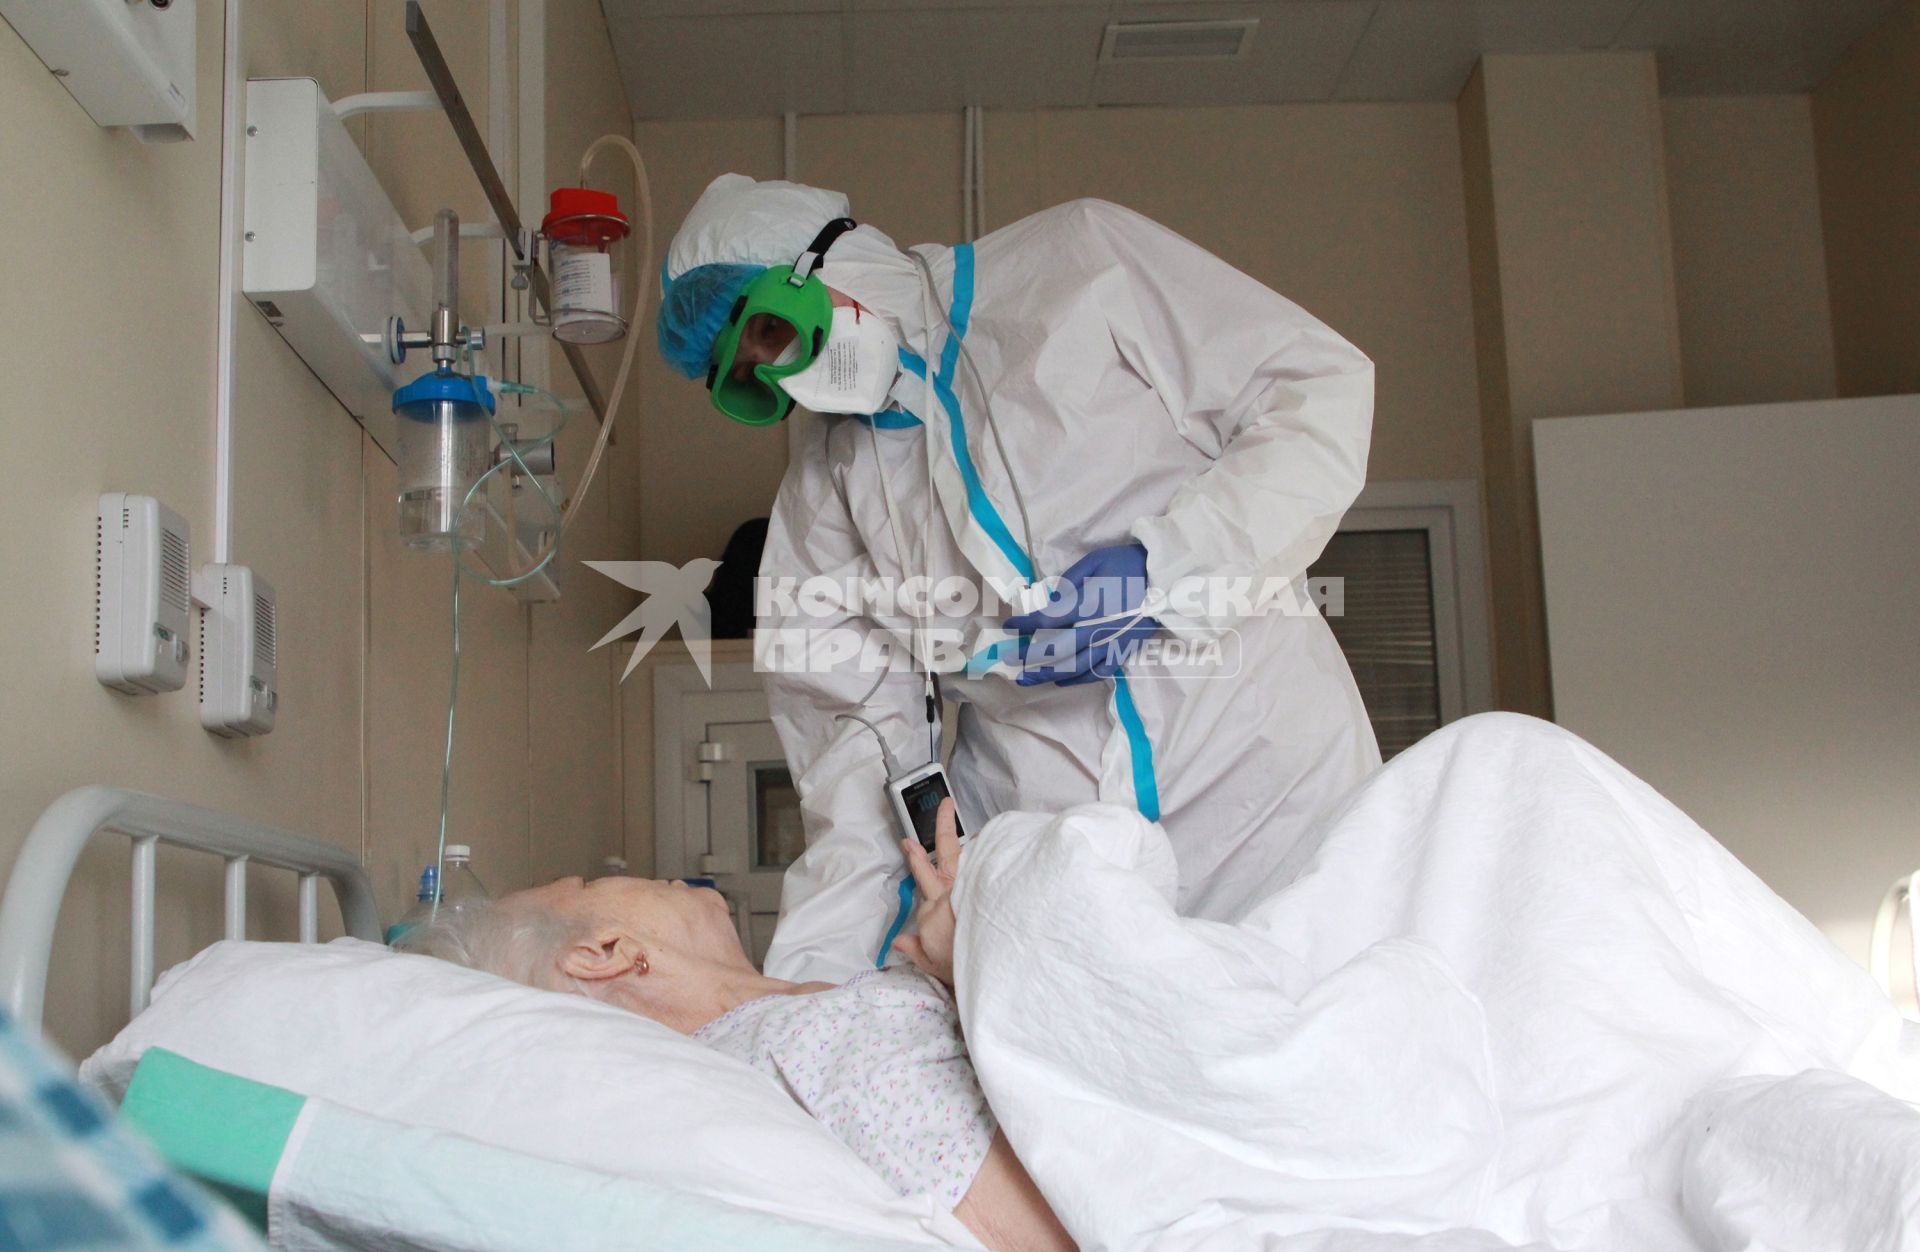 Иркутск. Медицинский работник и пациент в больнице, где оказывают помощь пациентам с коронавирусной инфекцией COVID-19.